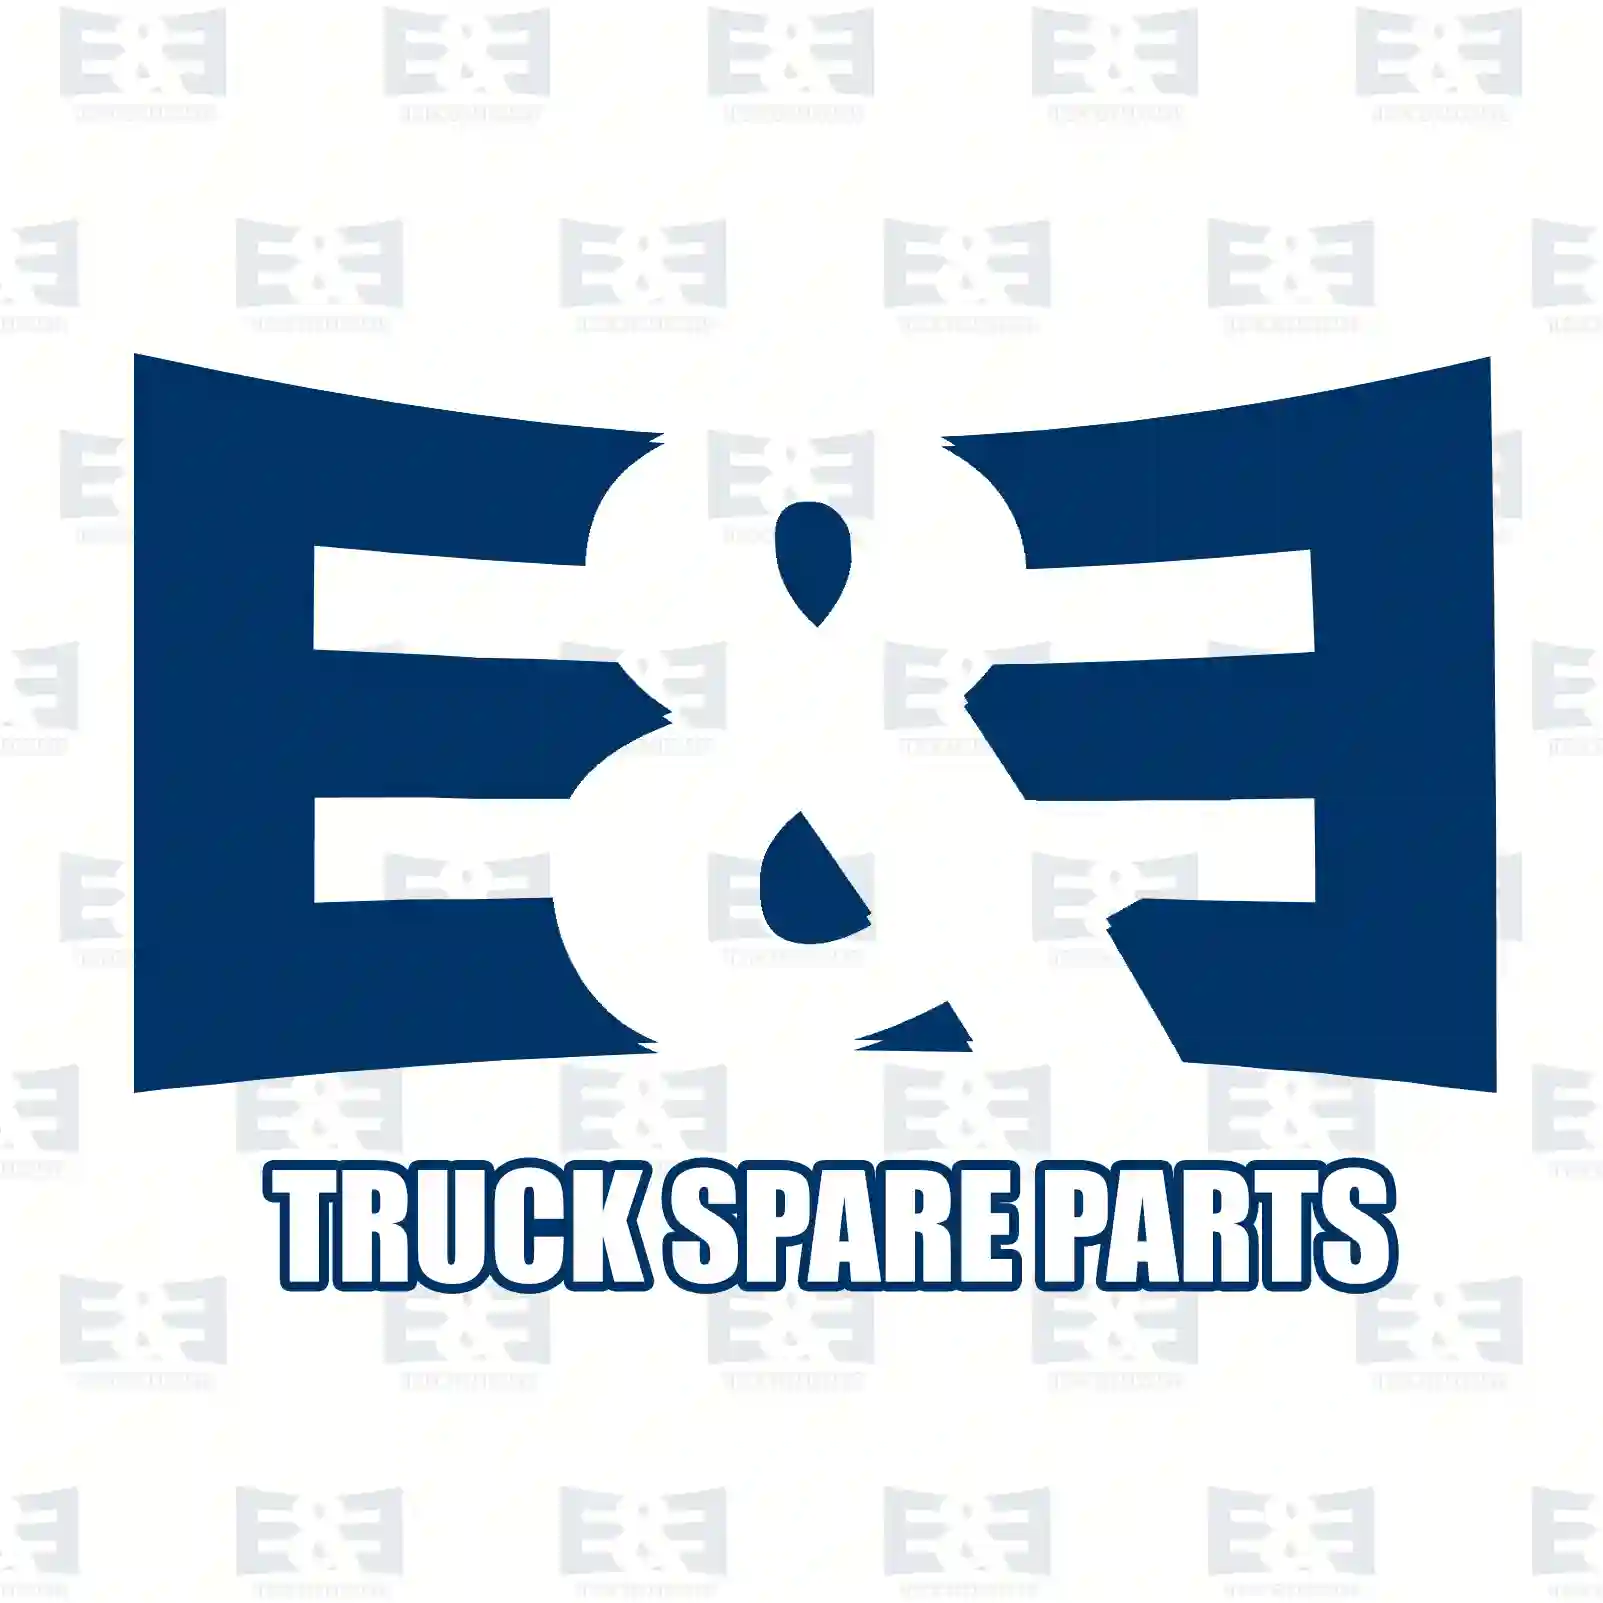 Engine mounting, 2E2207663, 93197459, 4419377, 112108180R ||  2E2207663 E&E Truck Spare Parts | Truck Spare Parts, Auotomotive Spare Parts Engine mounting, 2E2207663, 93197459, 4419377, 112108180R ||  2E2207663 E&E Truck Spare Parts | Truck Spare Parts, Auotomotive Spare Parts